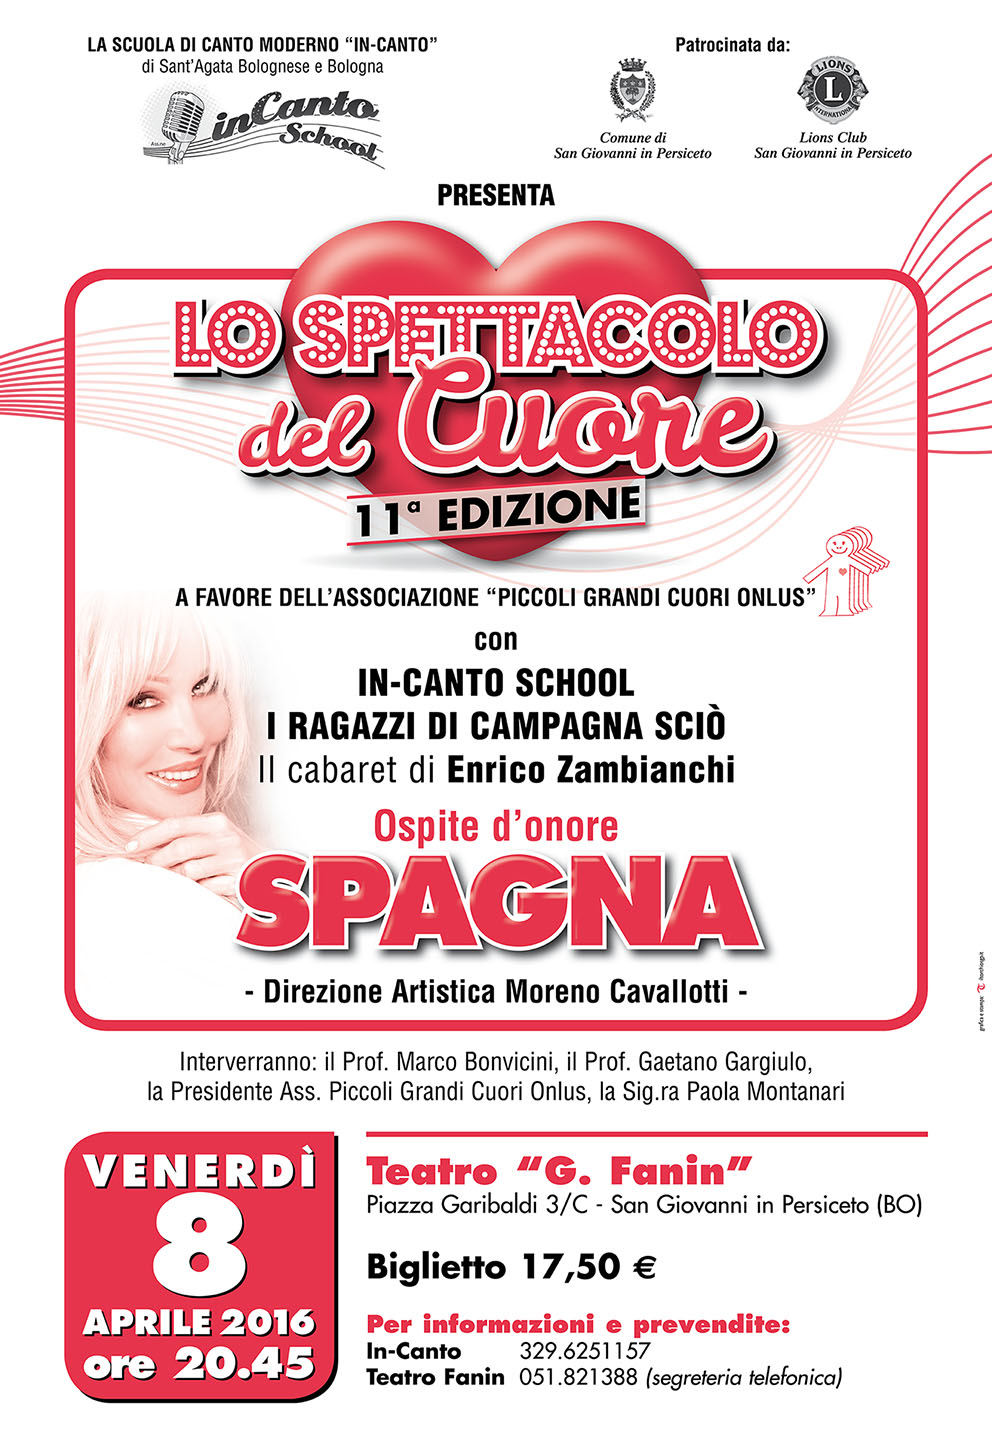 Scuola di canto Bologna - Incanto School: Spettacolo Piccoli grandi cuori onlus, ospite Ivana Spagna